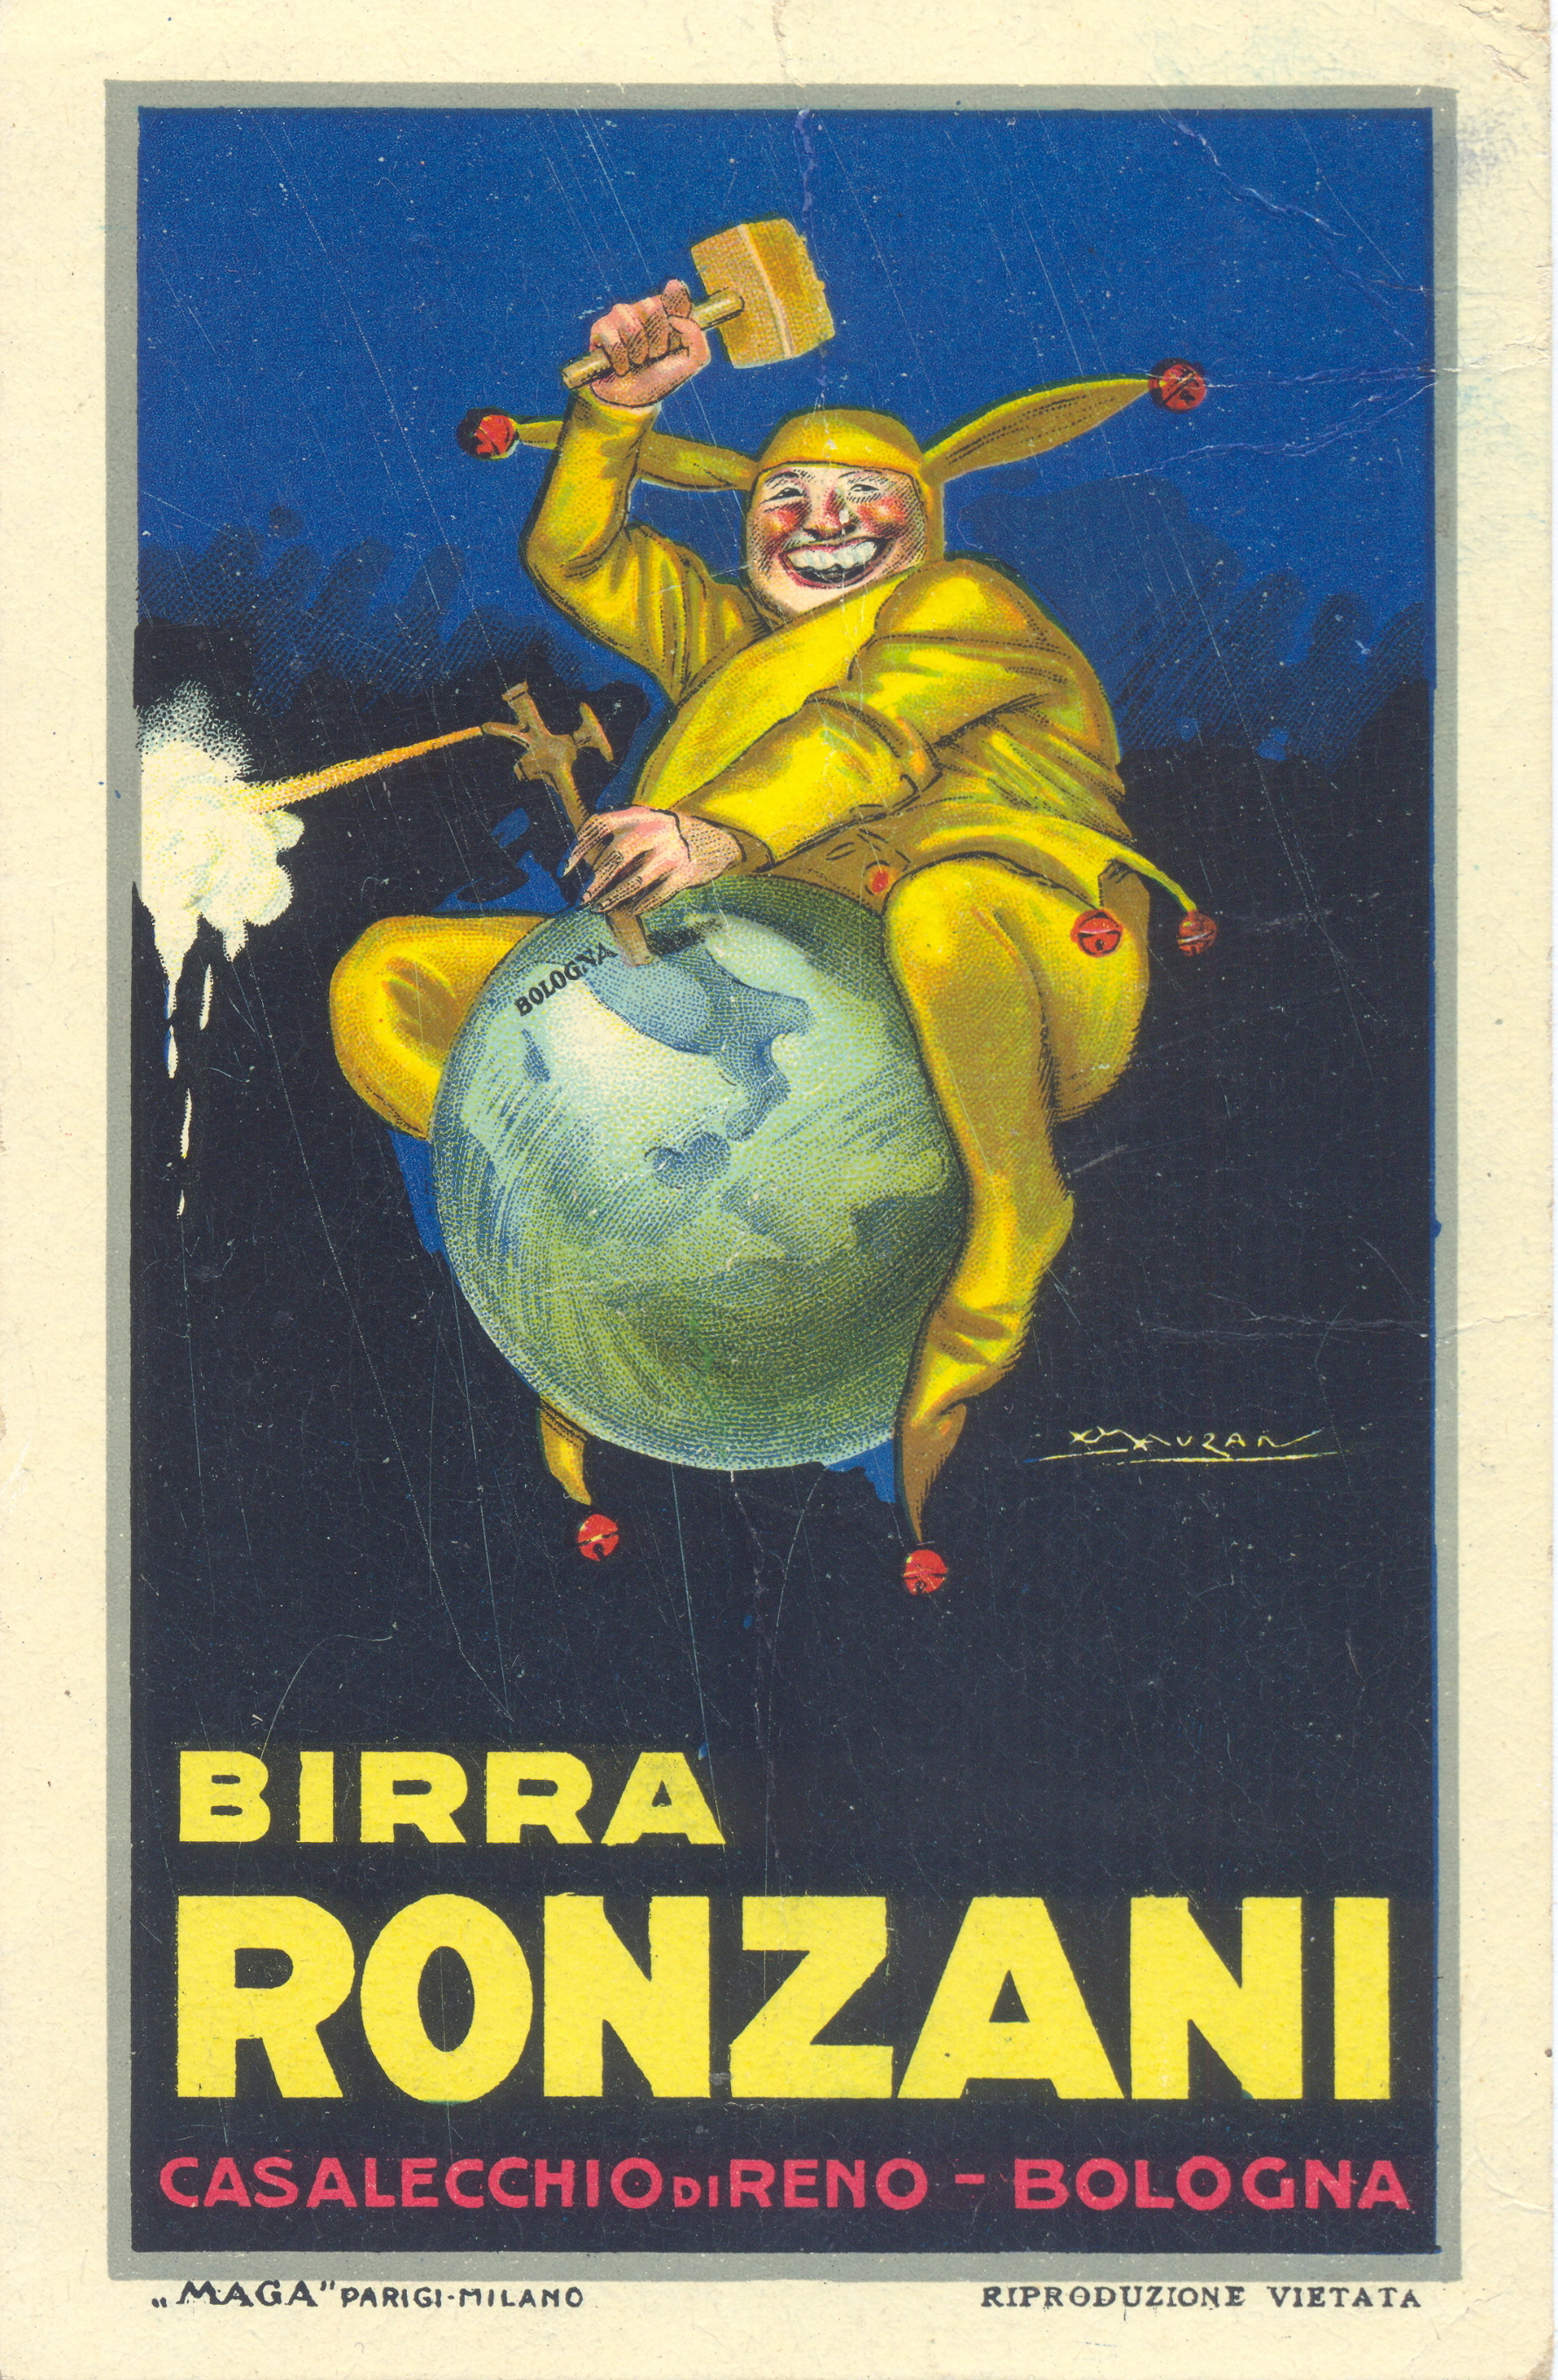 Cartolina pubblicitaria degli anni '20 della Birra Ronzani illustrata da L.A.Mauzan (Collezione M. Neri)